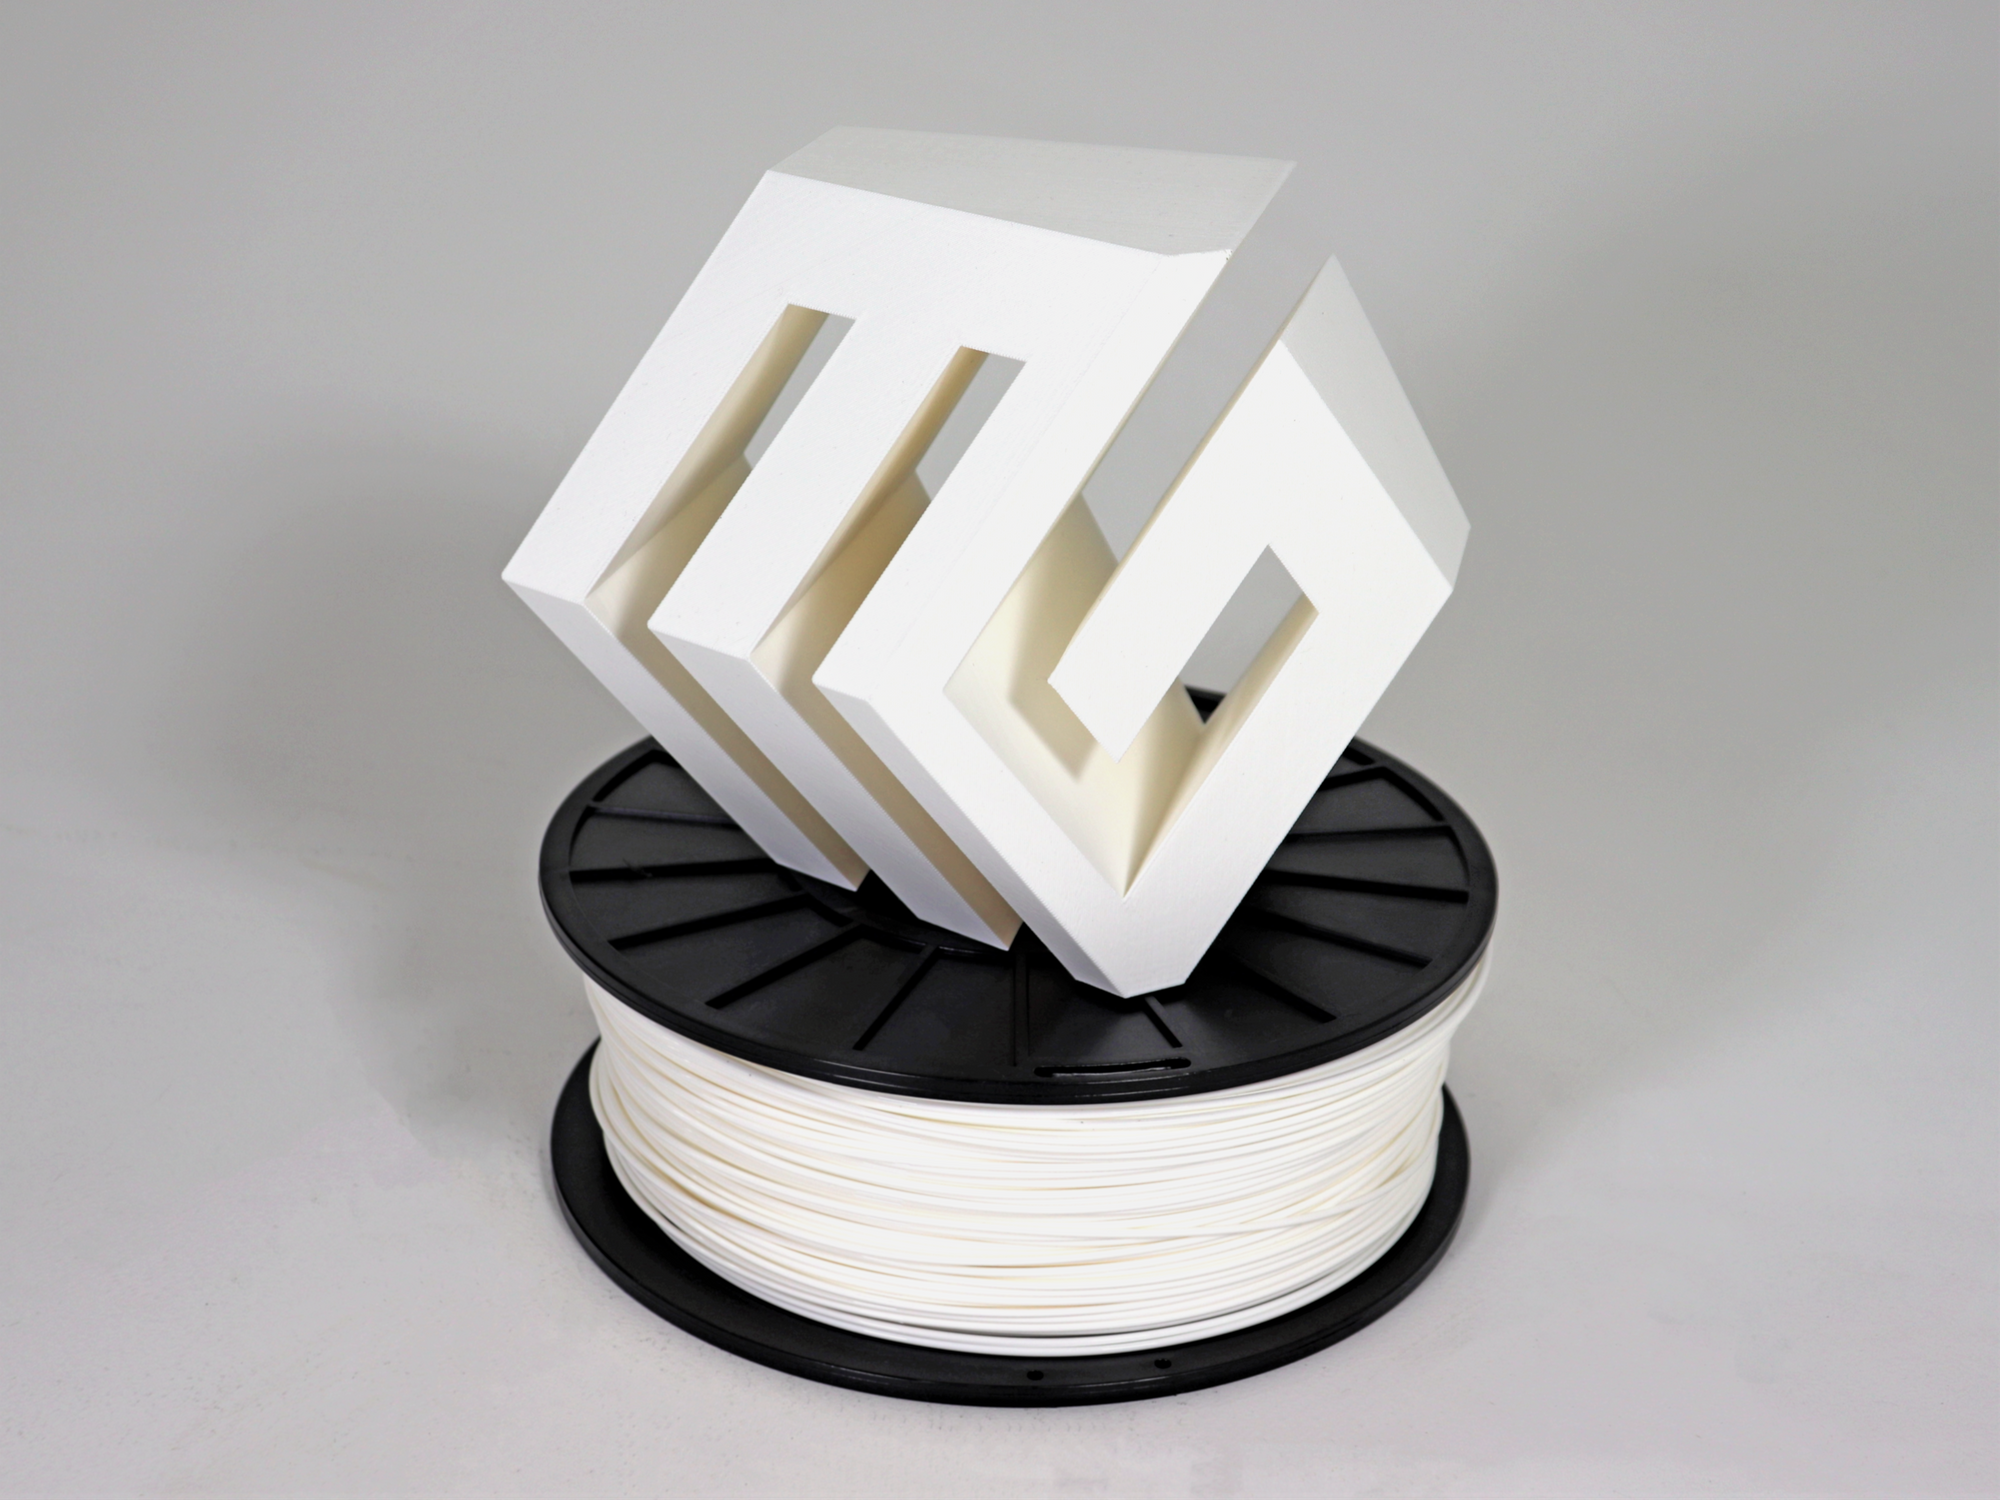 PLA filament for 3D printing - Buy PLA filaments at Makershop3D